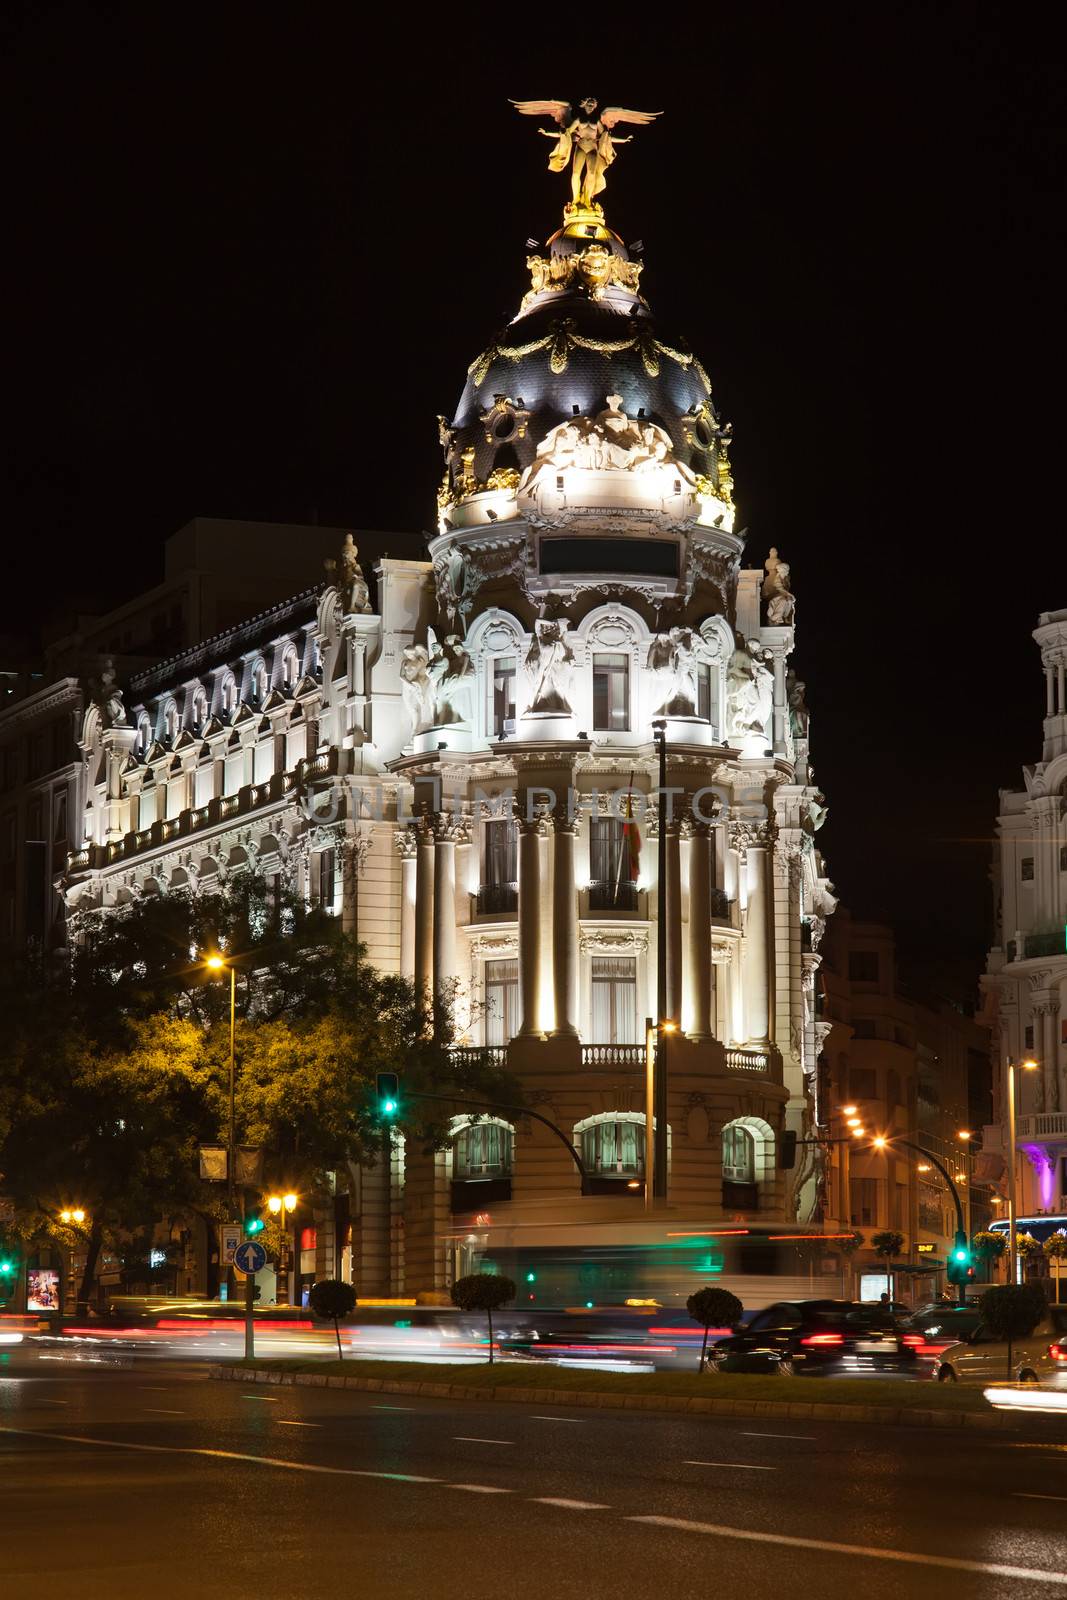 Gran Via in Madrid by sailorr